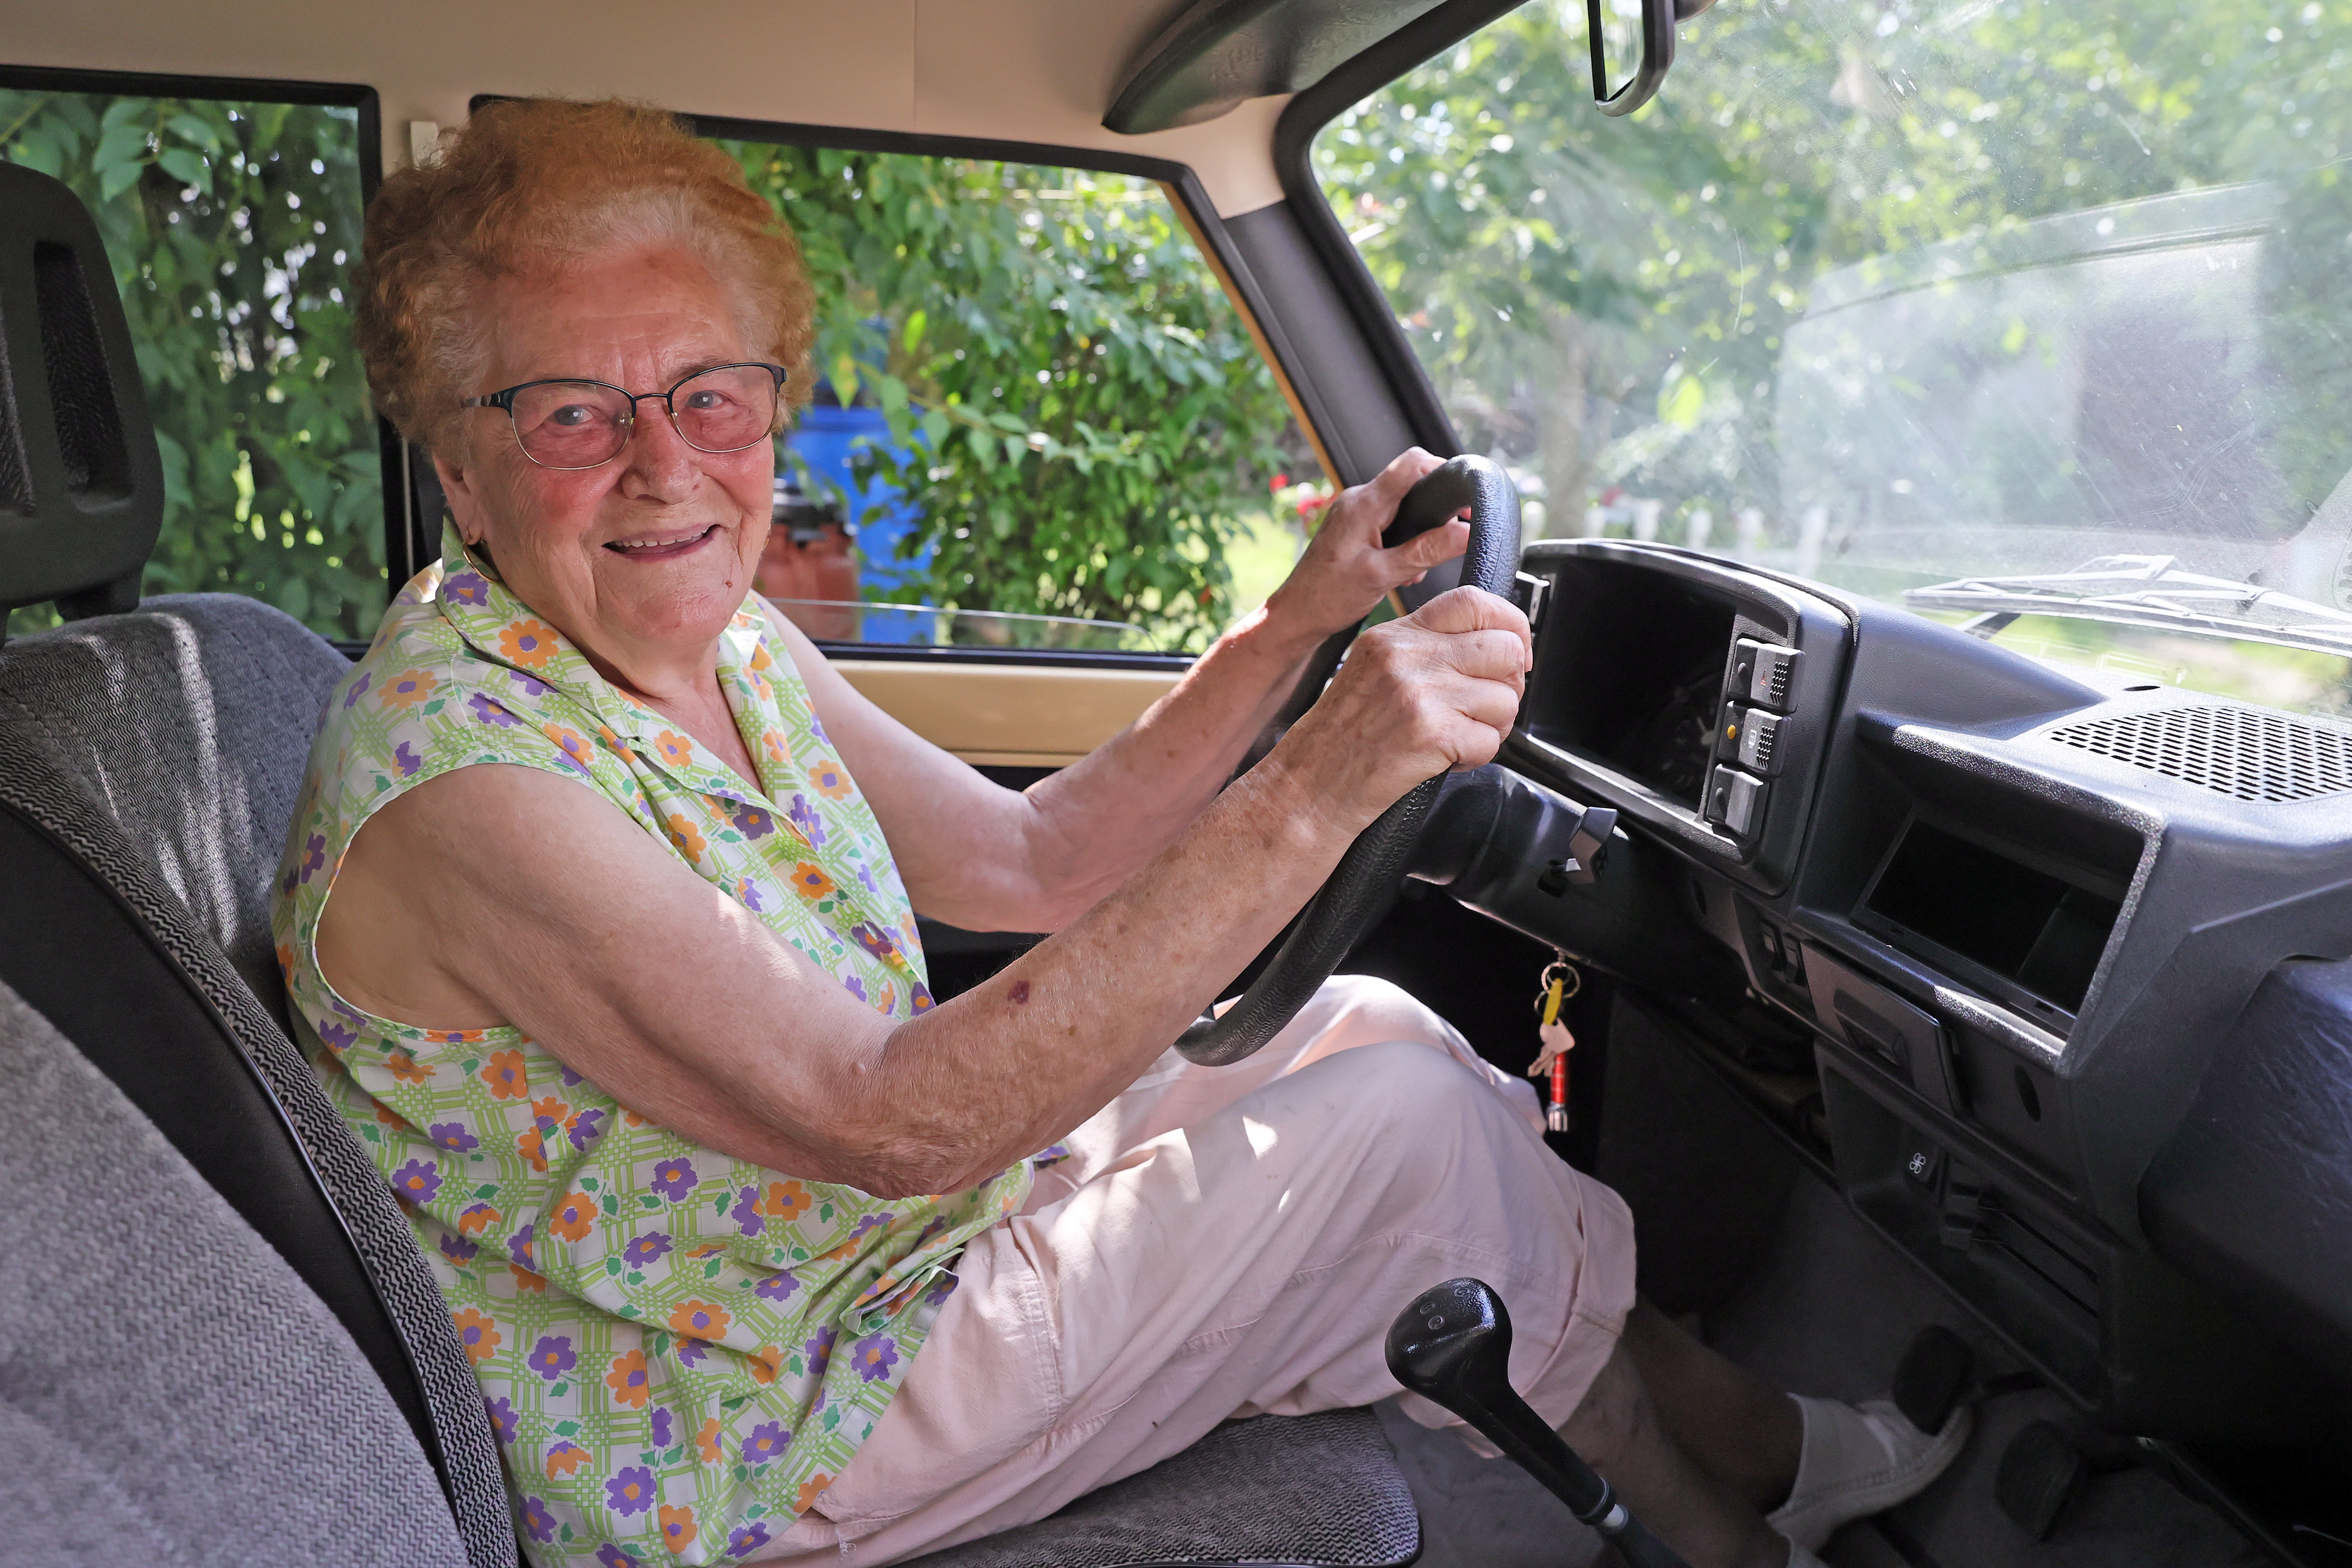 58 éve vezet, soha nem volt még balesete a 91 éves Irma néninek - Blikk